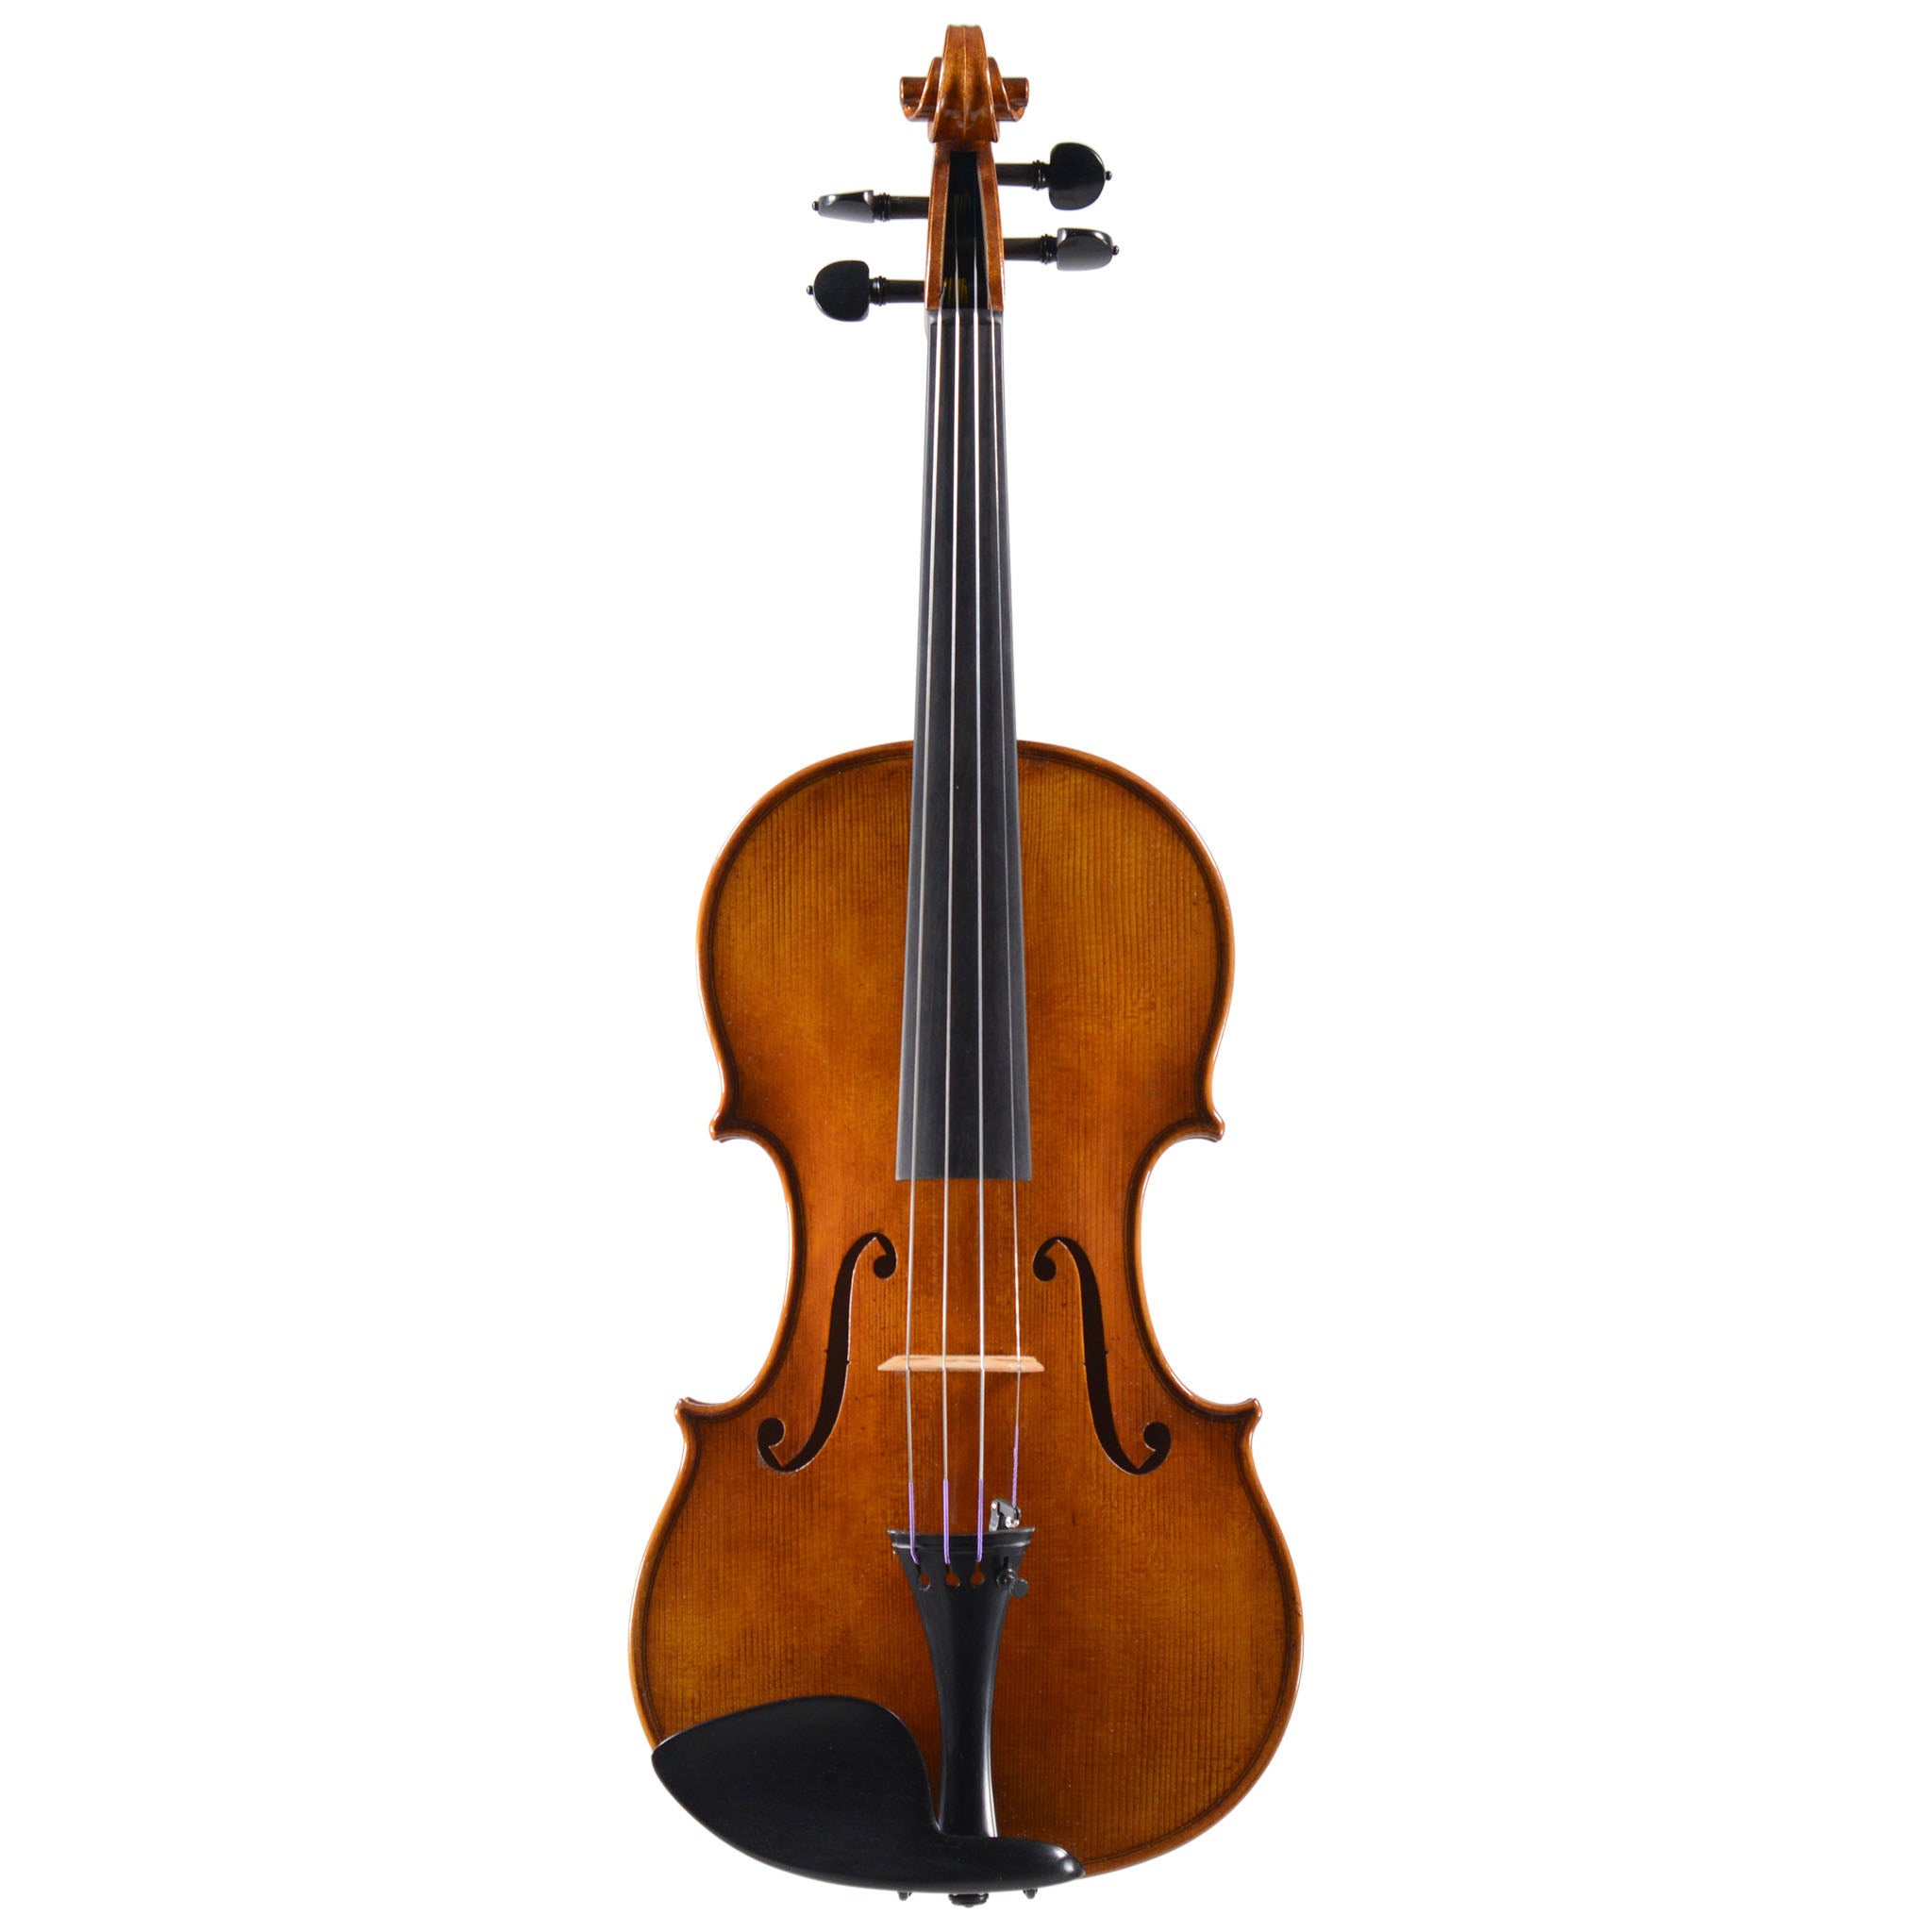 Holstein Bench Lord Wilton Violin